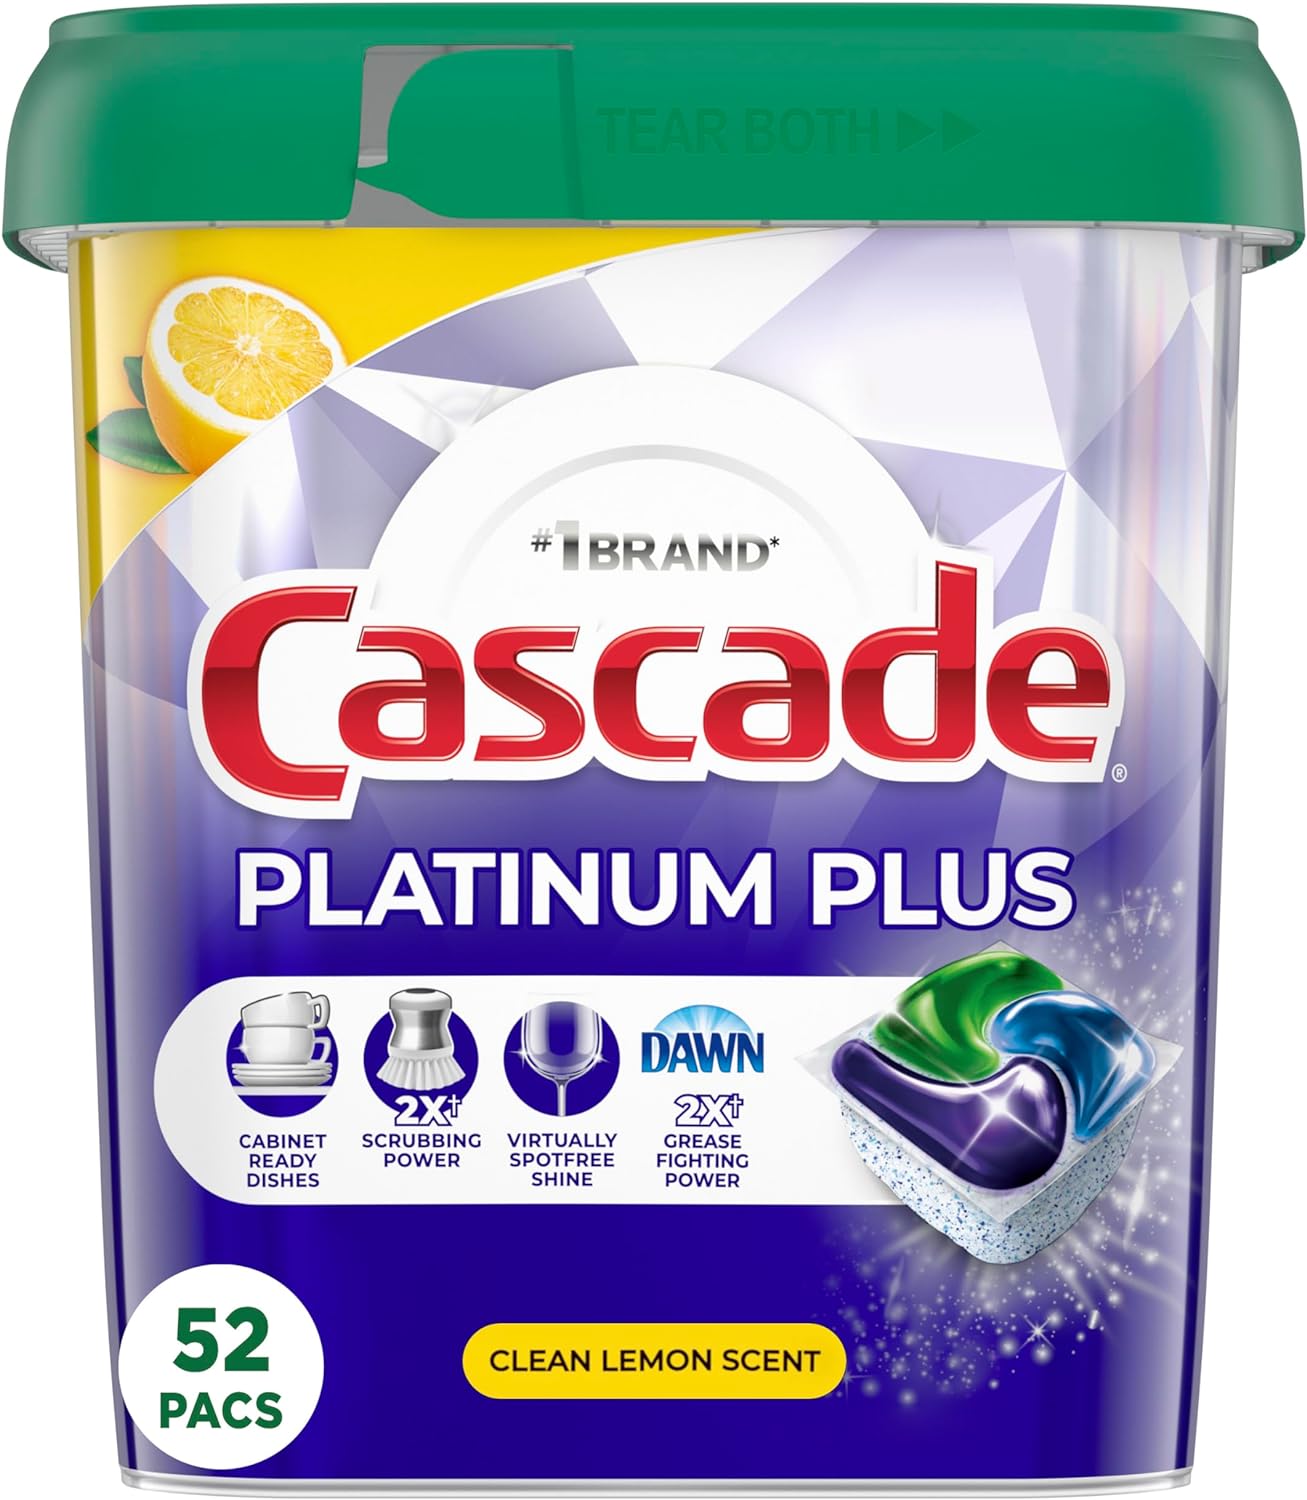 Cascade Platinum Plus Dishwasher Pods, Dish Detergent ActionPacs, Clean Lemon, 52 Count